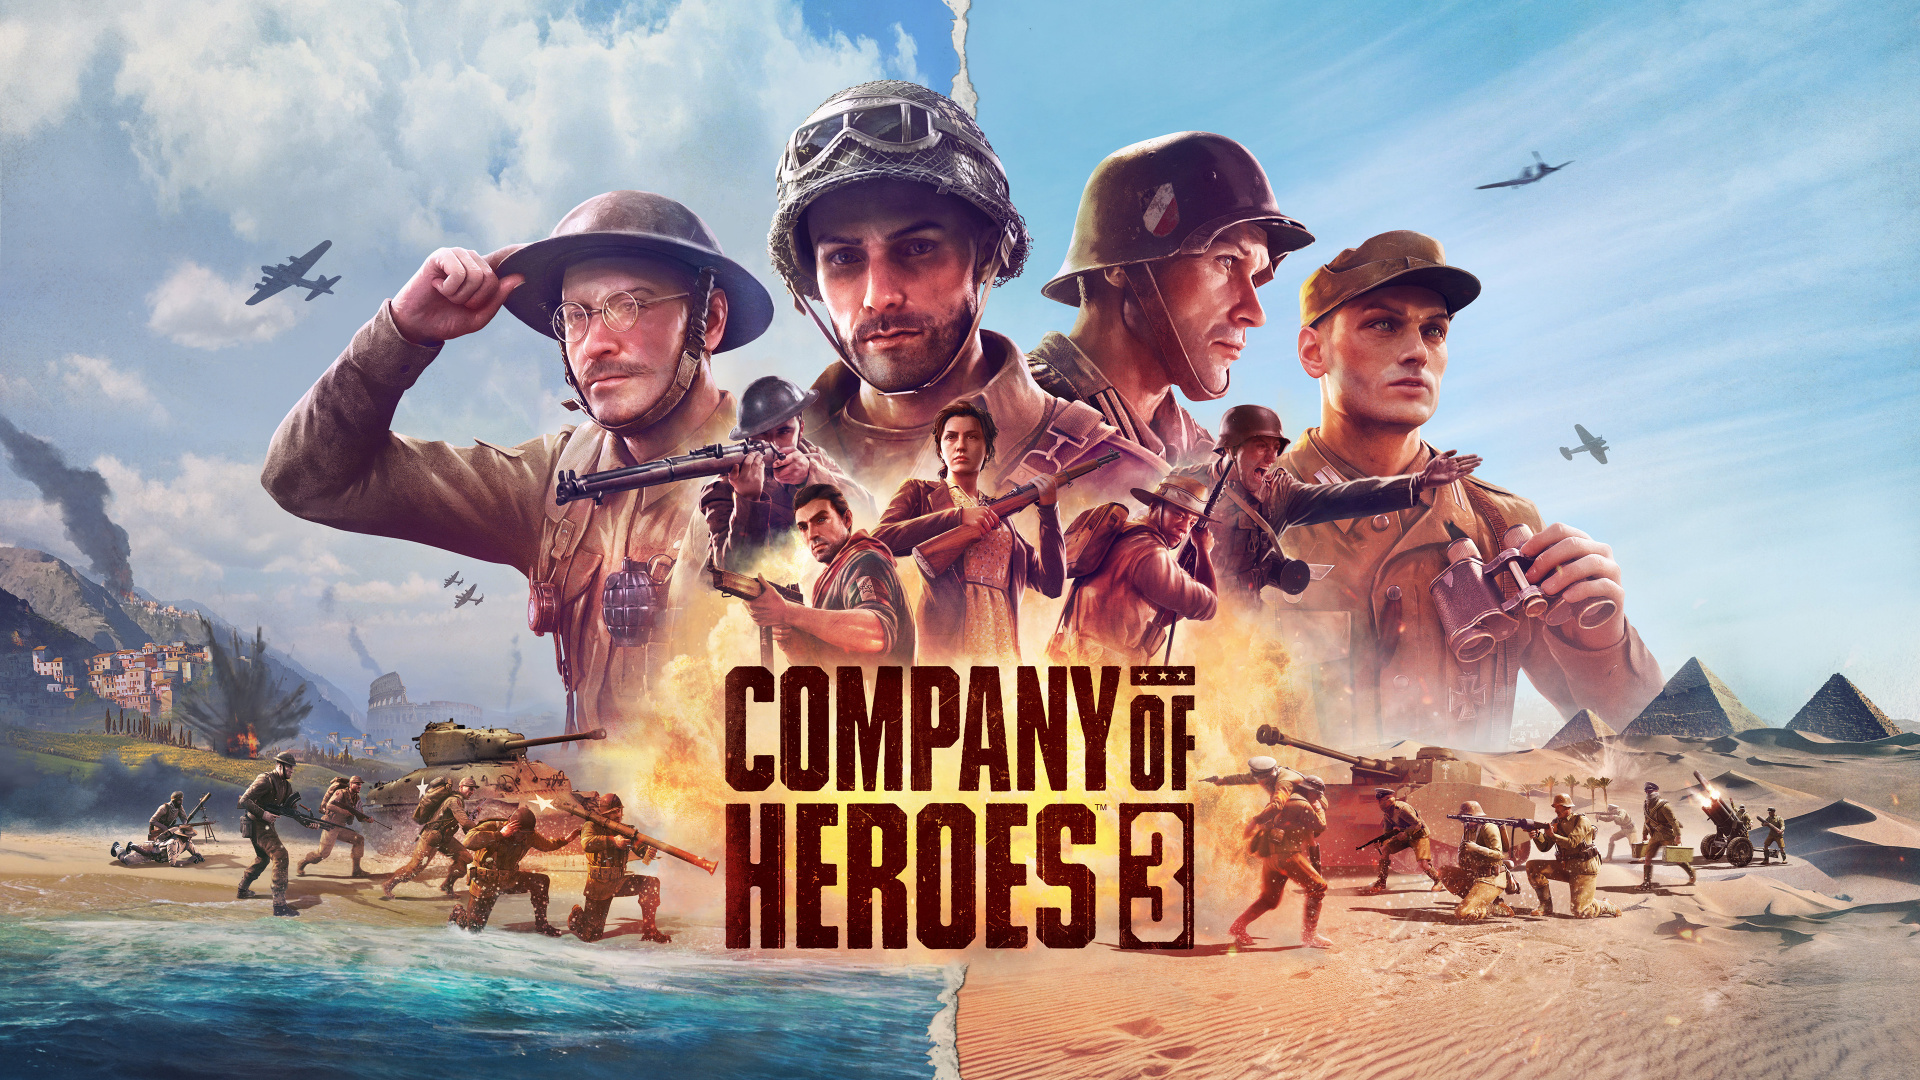 Анонс Company of Heroes 3. Трейлер, геймплей и первые детали новой части стратегий про Вторую мировую войну 